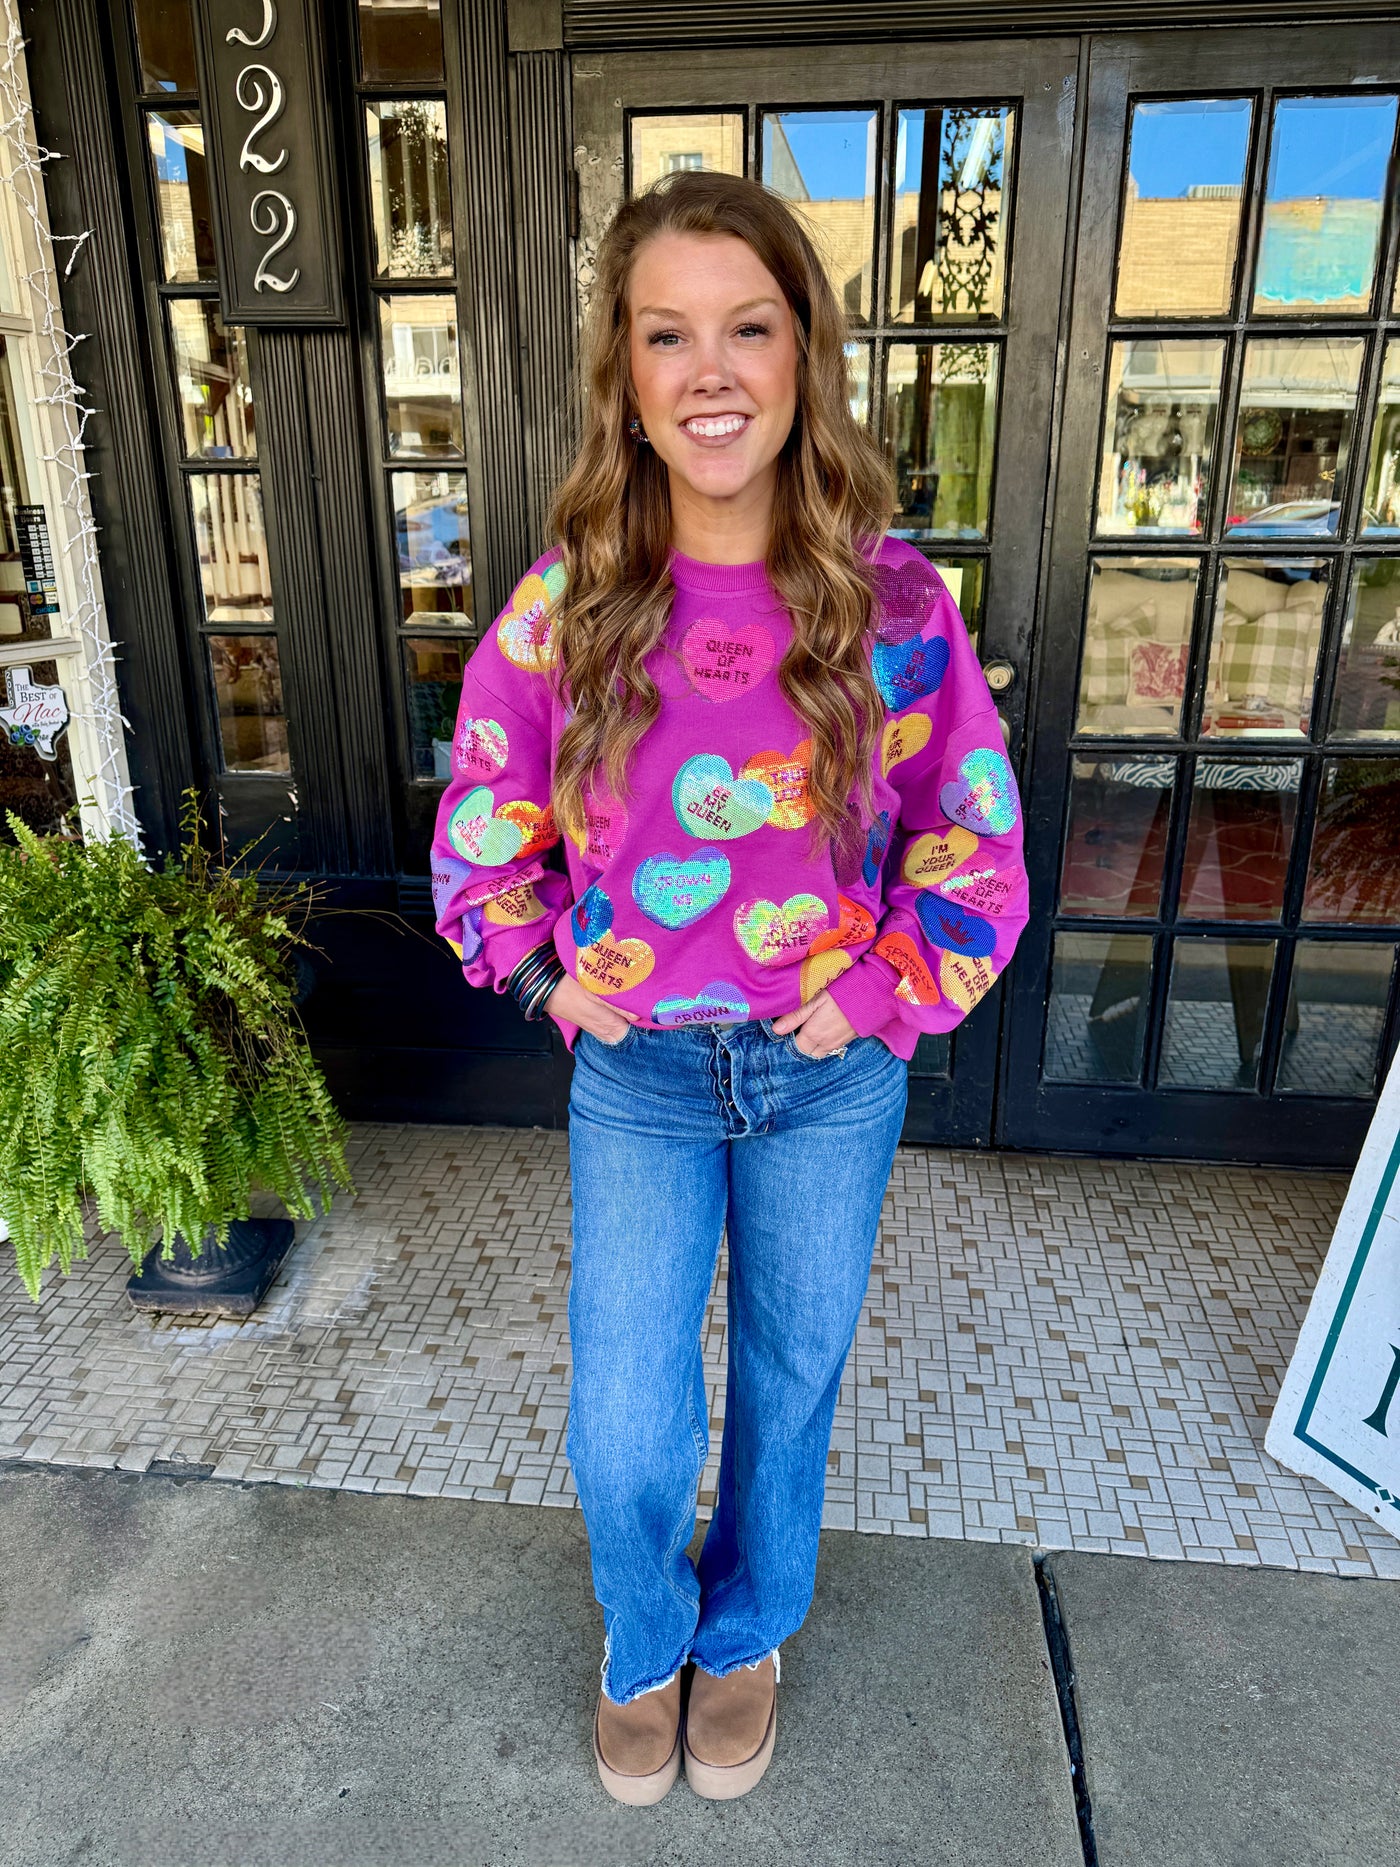 Purple Sequin Conversation Heart Sweatshirt | Queen of Sparkles